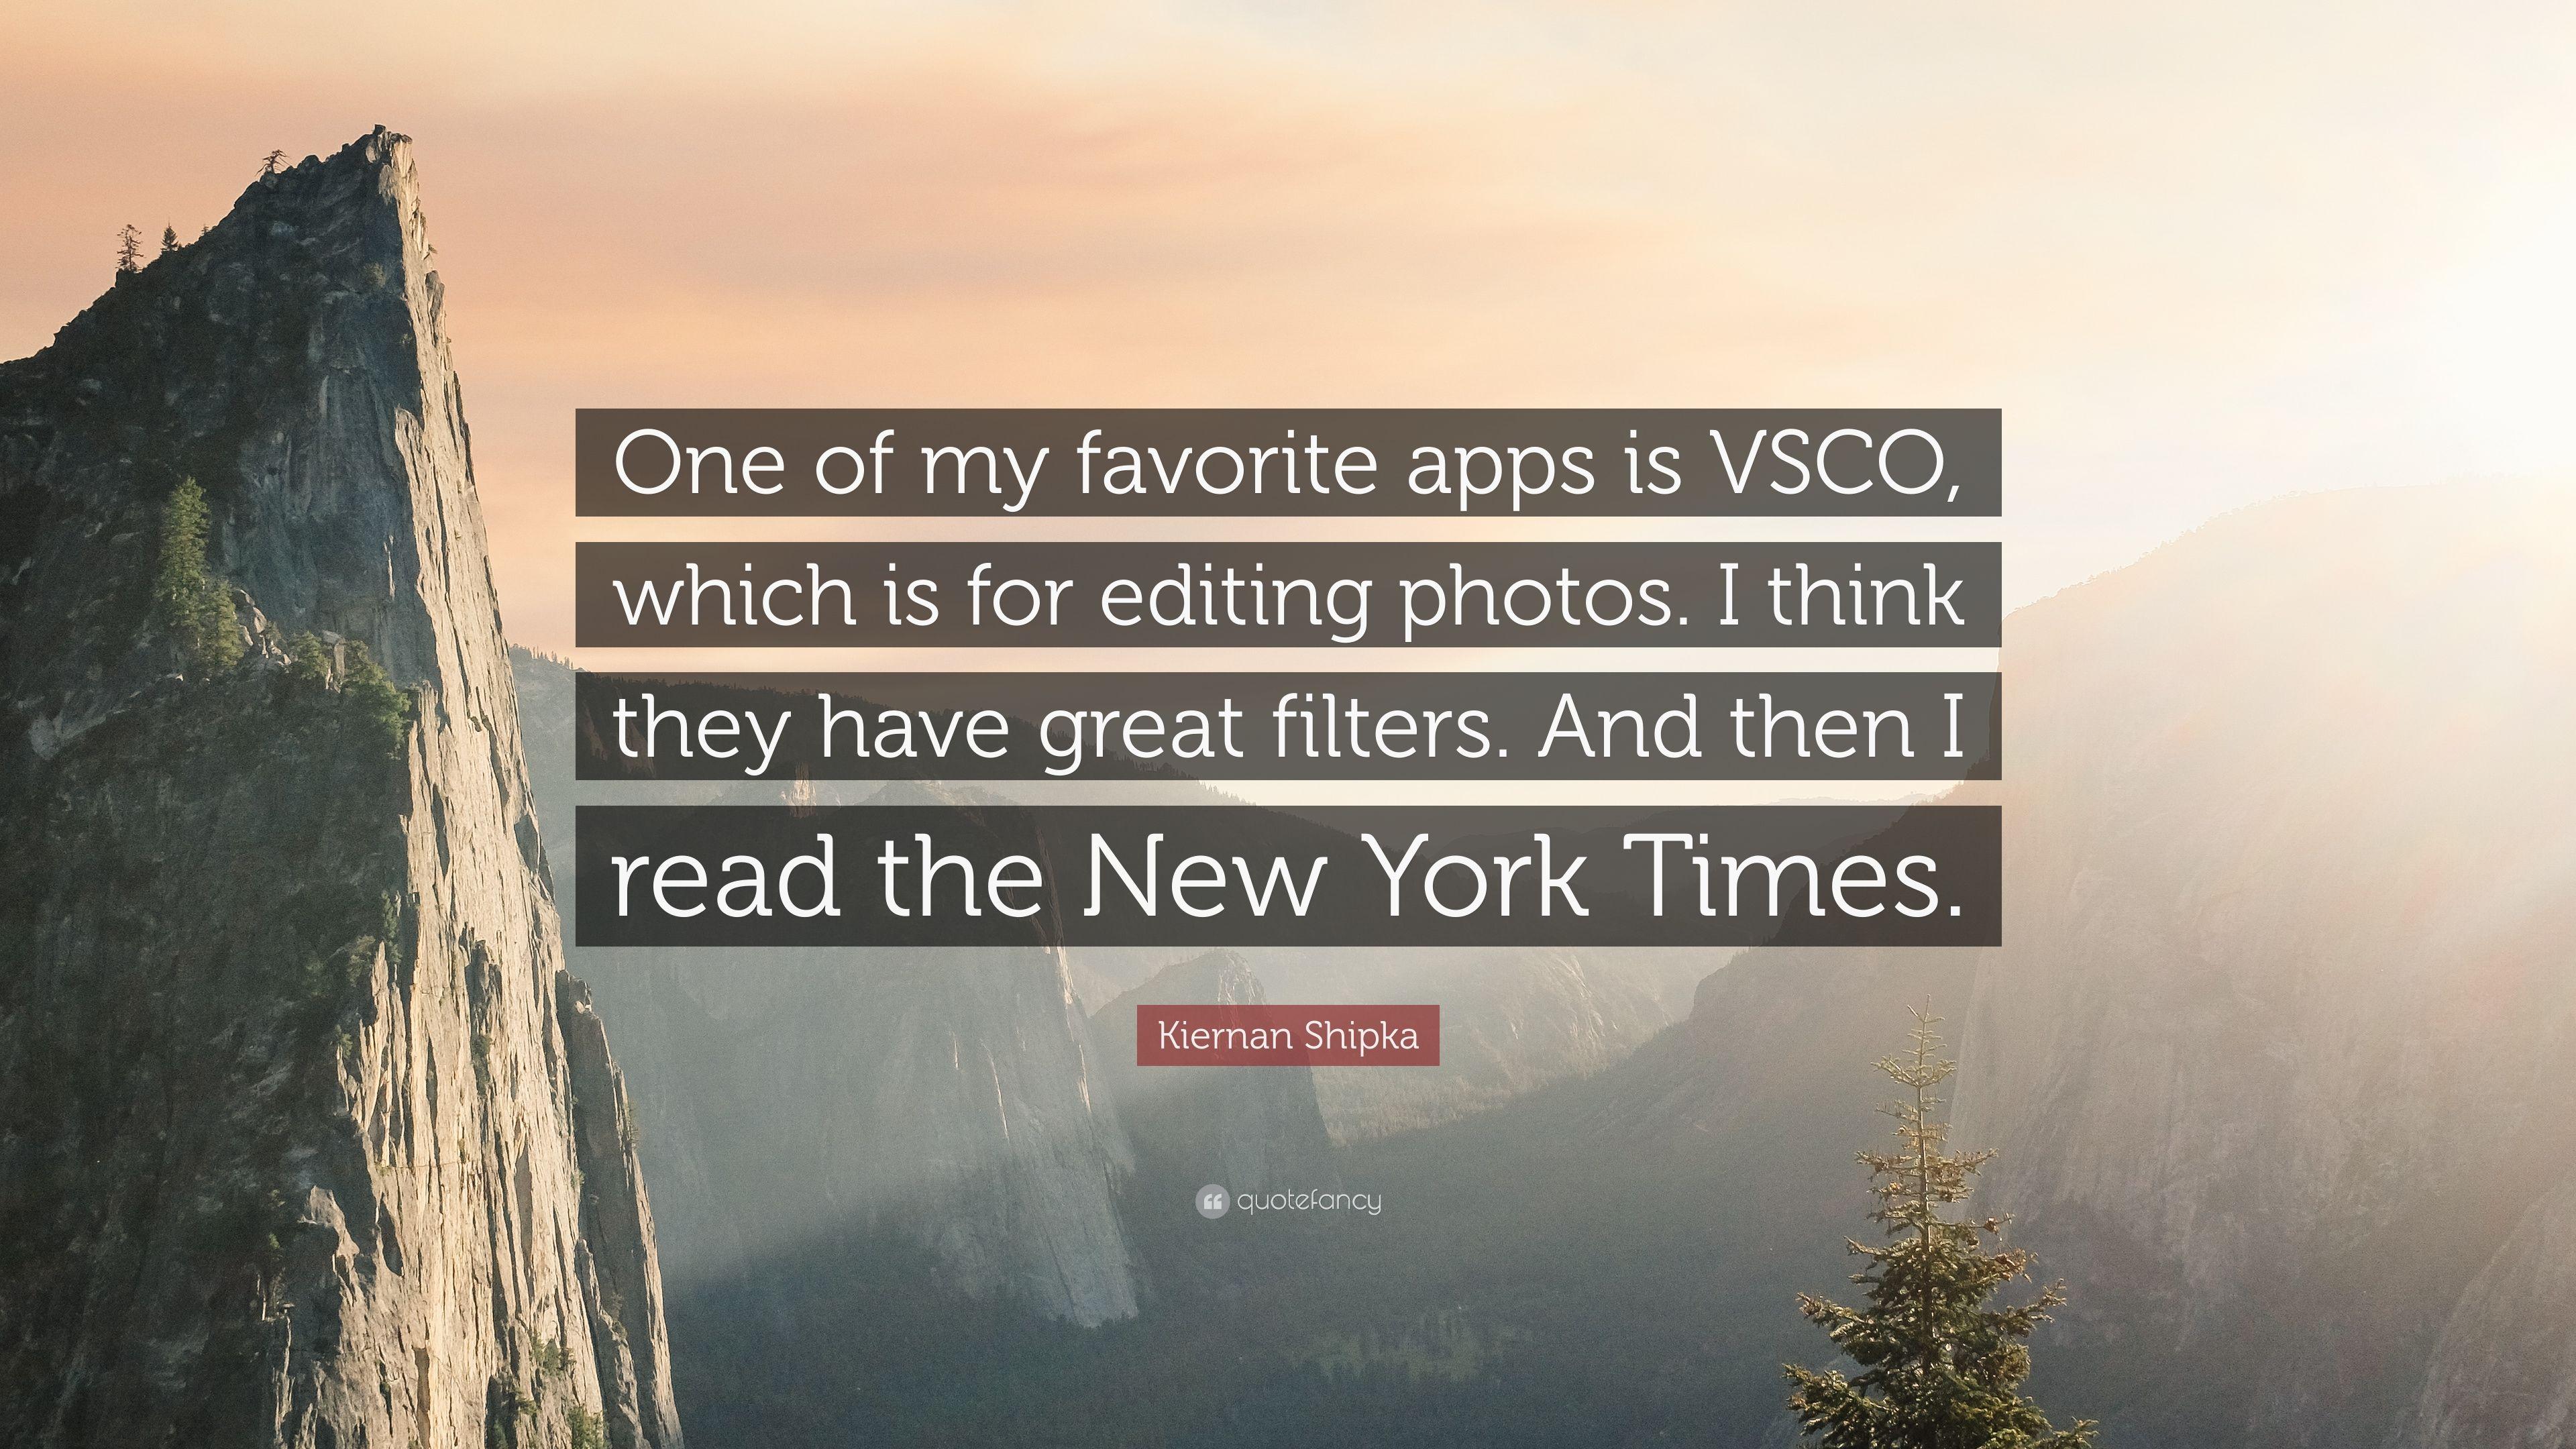 Kiernan Shipka Quote: “One of my favorite apps is VSCO